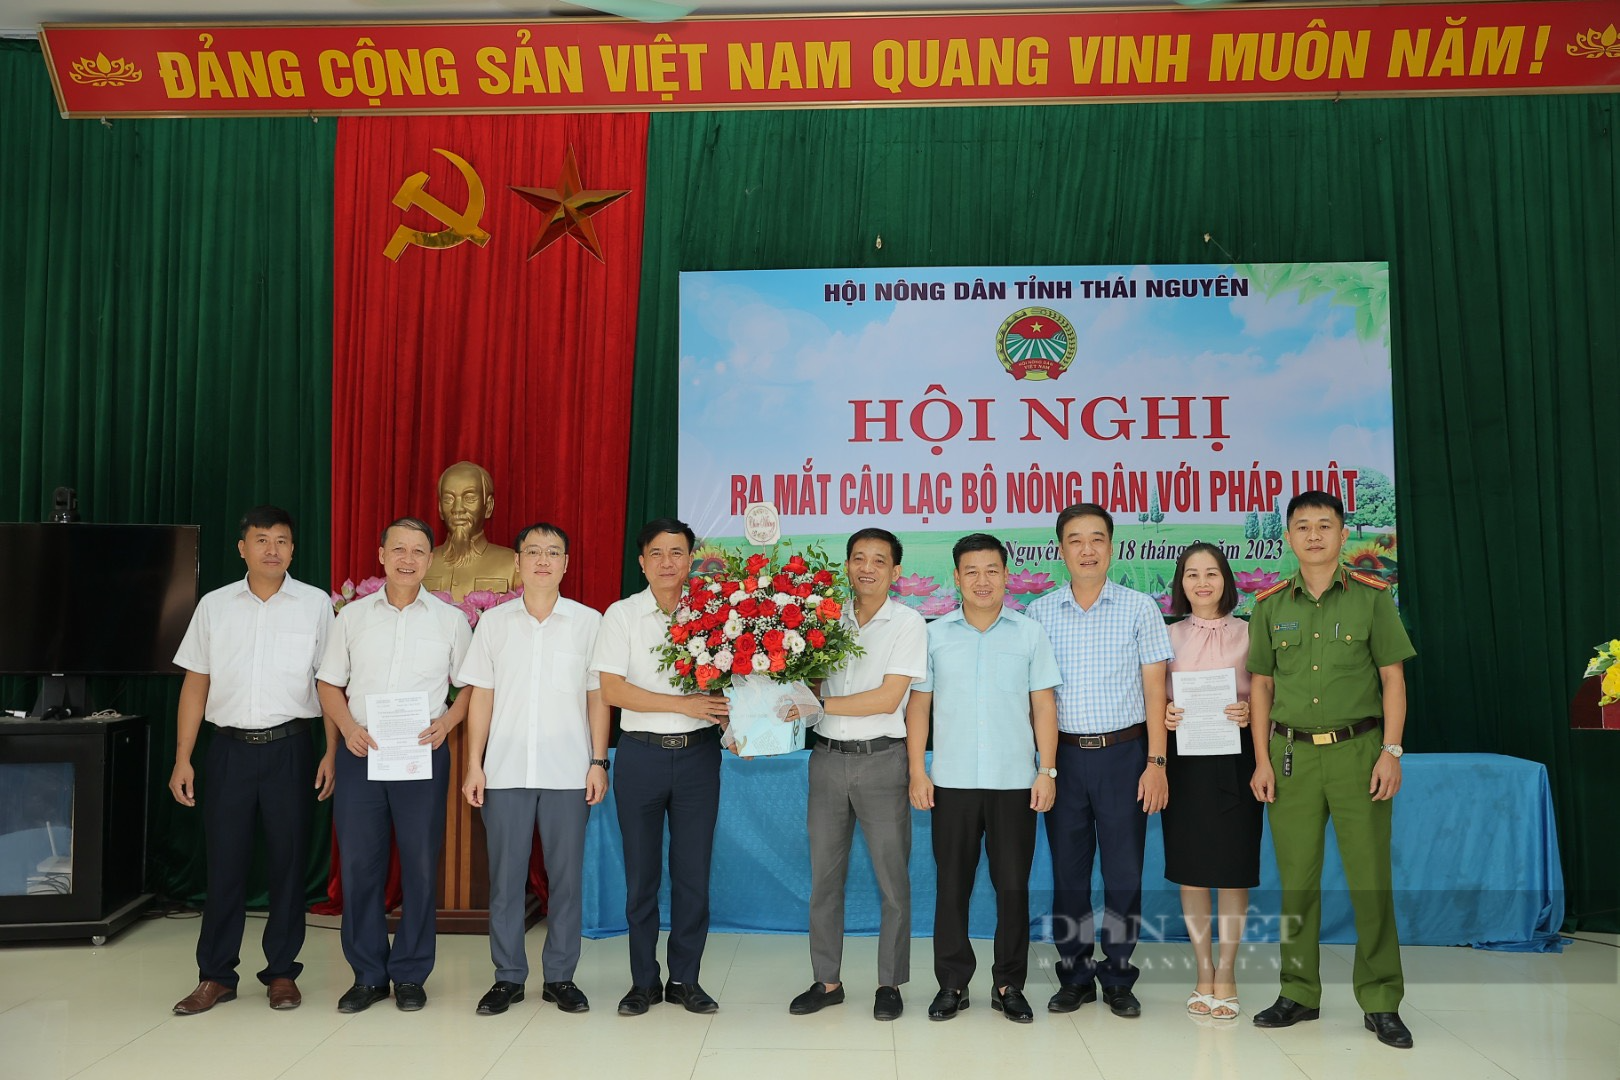 Hội Nông dân tỉnh Thái Nguyên ra mắt Câu lạc bộ “Nông dân với pháp luật” - Ảnh 2.